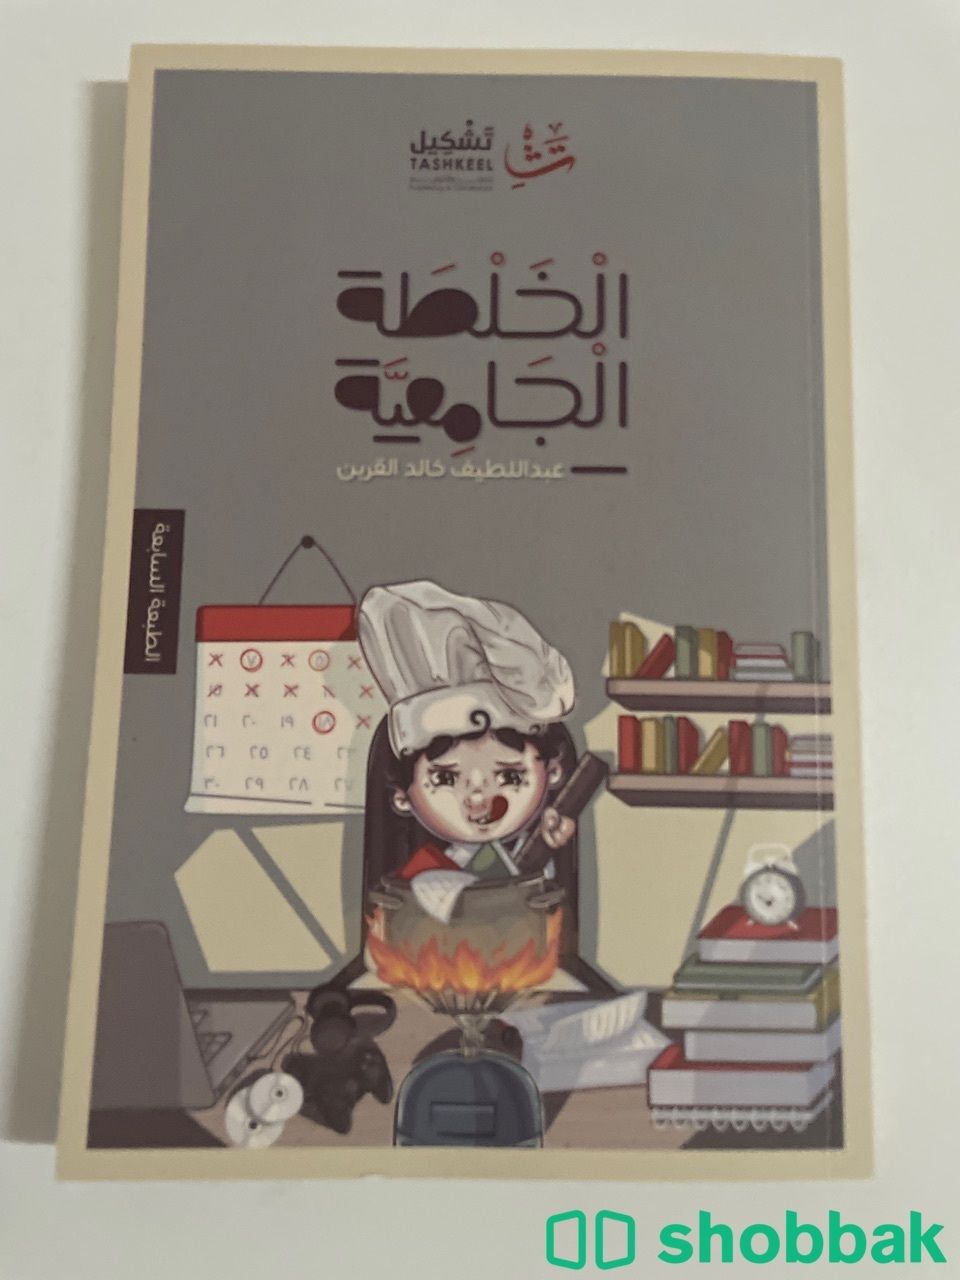 كتاب الخلطة الجامعية لعبداللطيف القرين  Shobbak Saudi Arabia